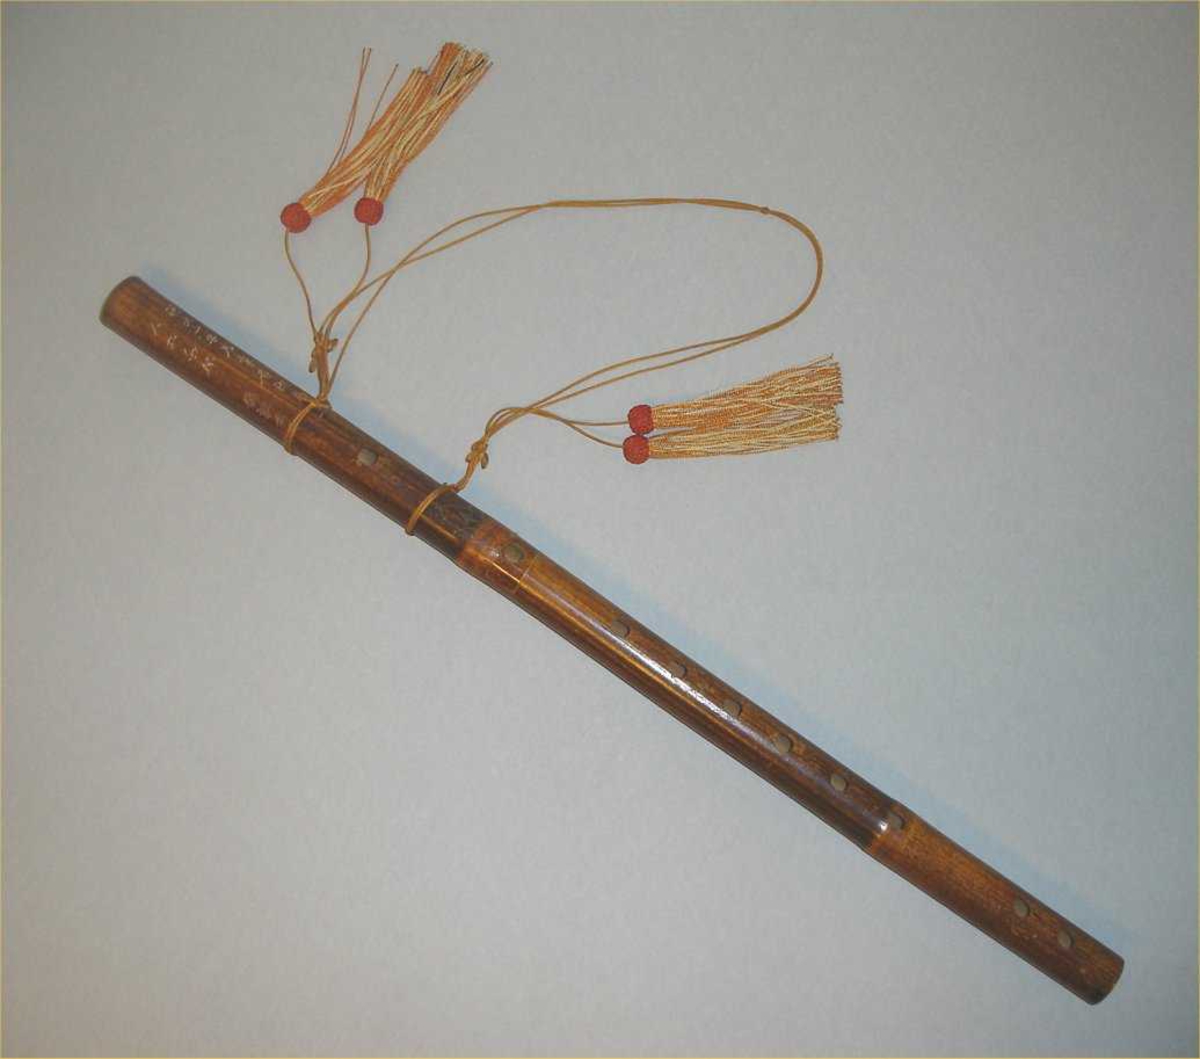 Tverrfløyte av et stykke lakkert bambus. 12 hull: 6 fingerhull, 4 stemmehull ved nedre ende, og mellom blåse-og fingerhull et hull dekket av et membran.
Fløyten dekorert med kinesiske skrifttegn. En lang silkesnor med fire silkedusker er festet til fløyten.